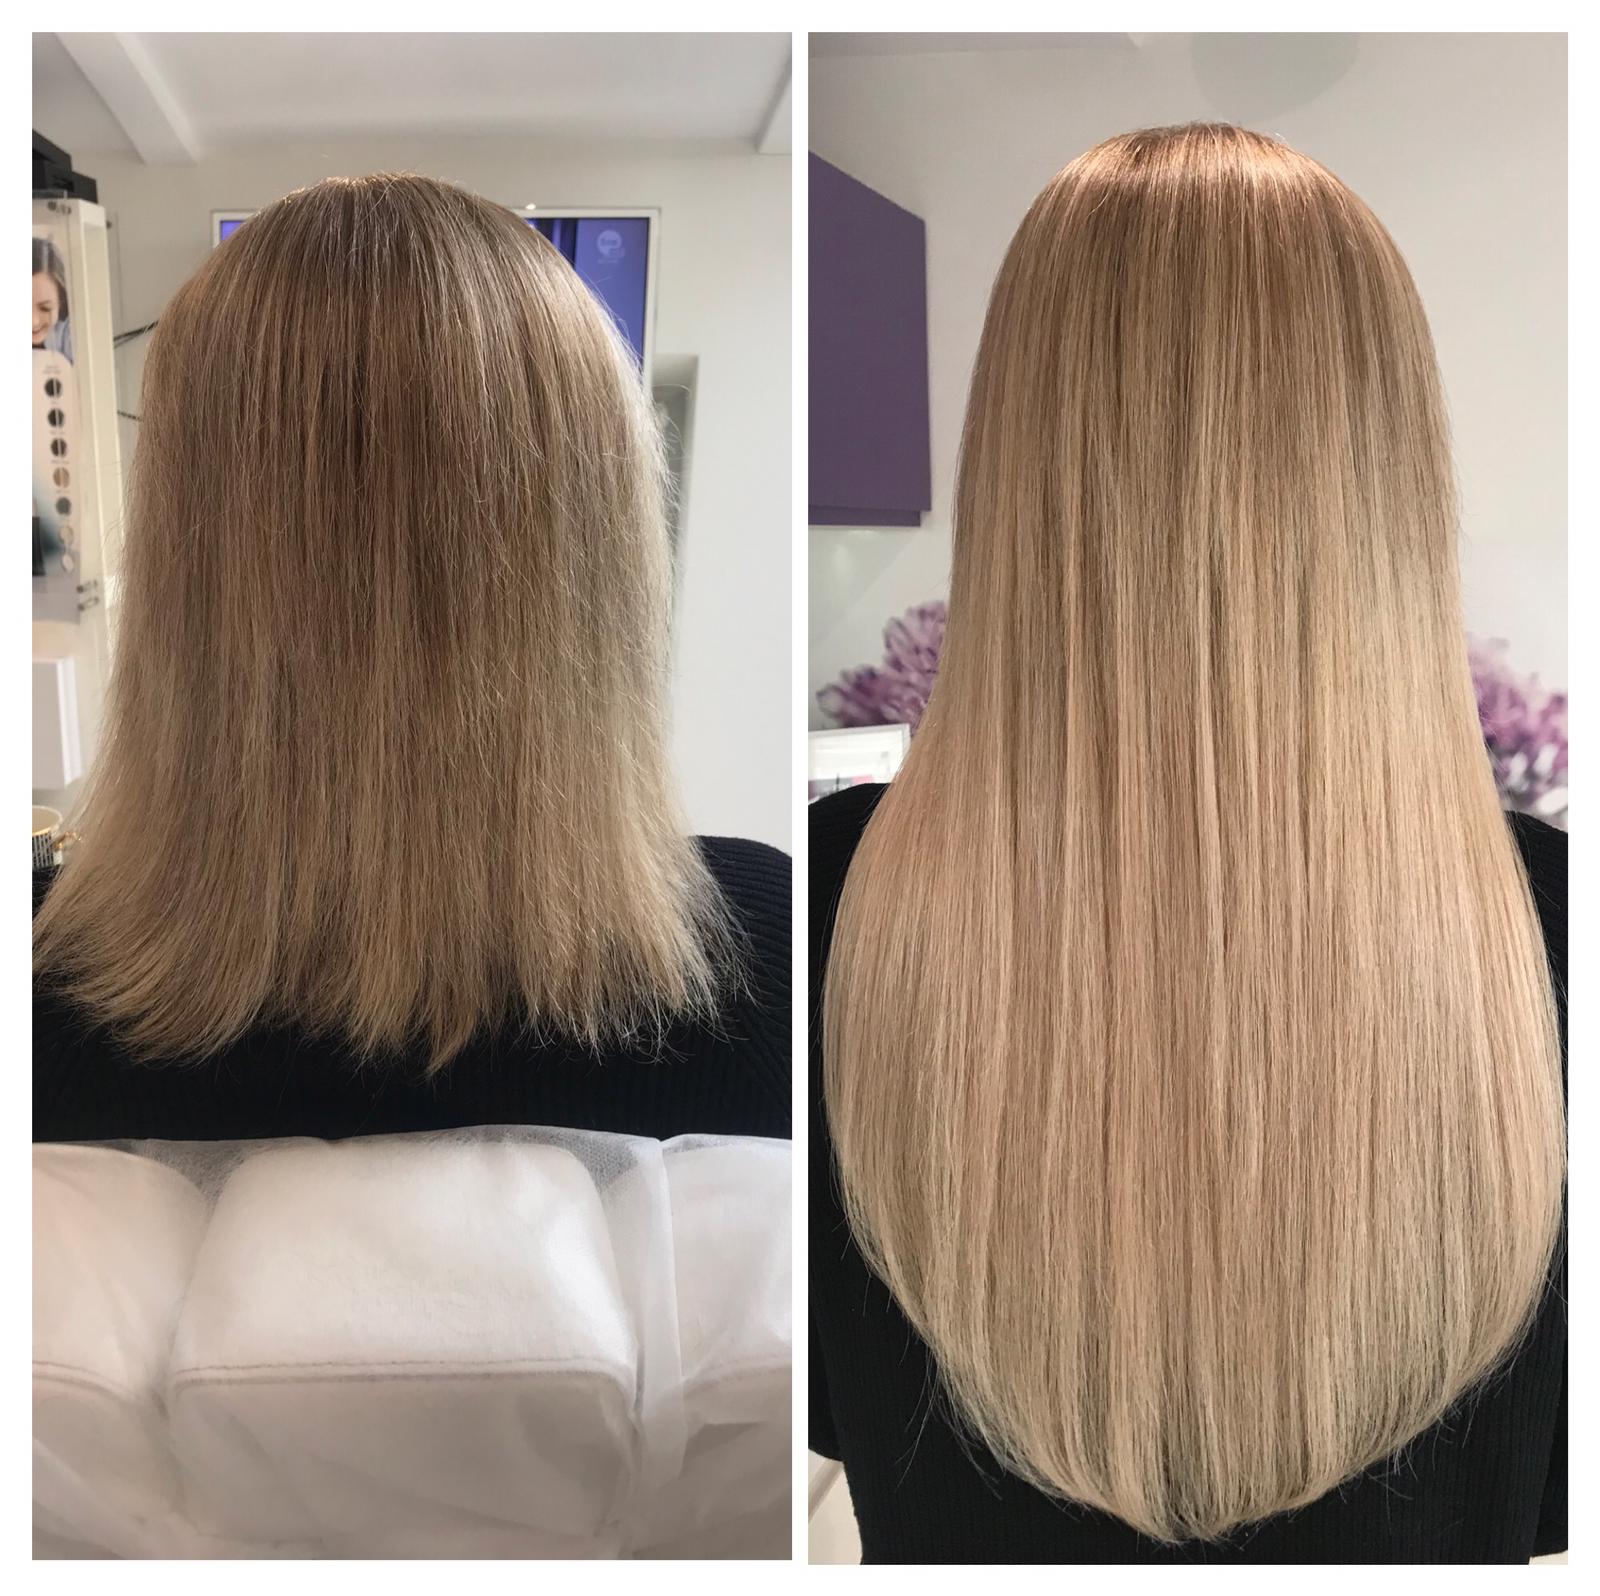 Włosy klientki przed i po zabiegu przedłużania włosami słowiańskimi na mikroringach